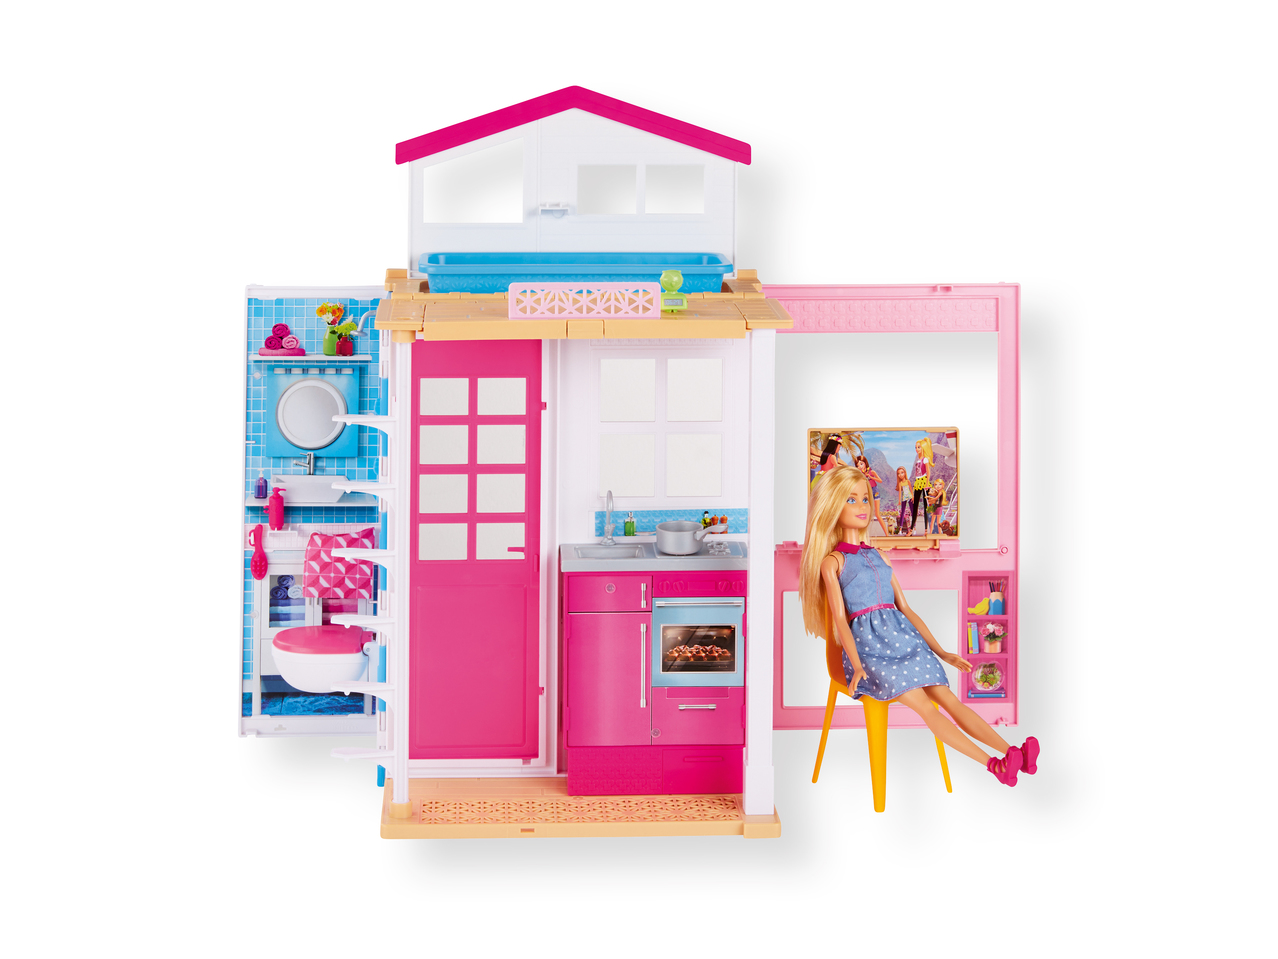 'Barbie(R)' Casa de vacaciones